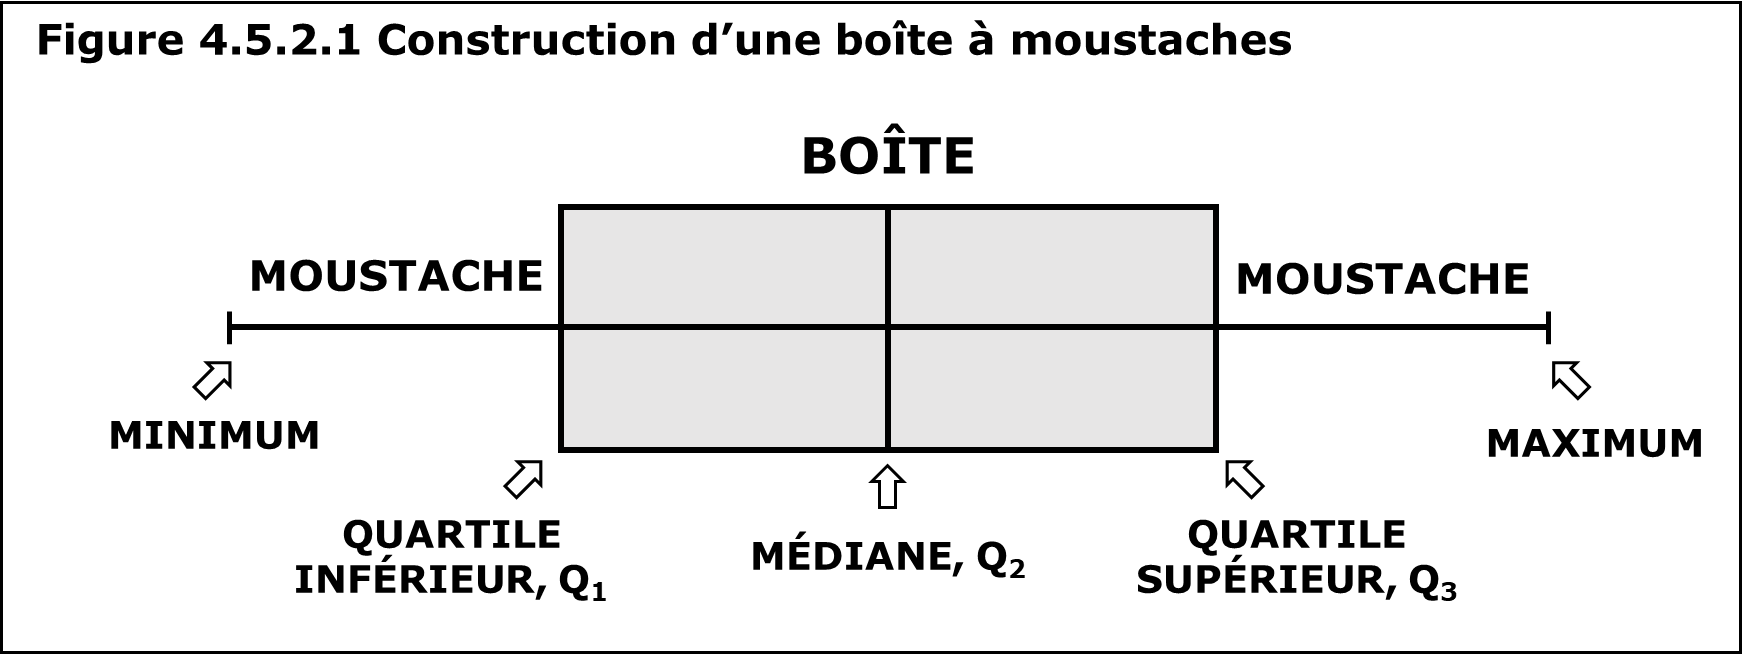 Figure 4.5.2.1 montre comment on construit la boîte à moustaches à partir du résumé en cinq nombres